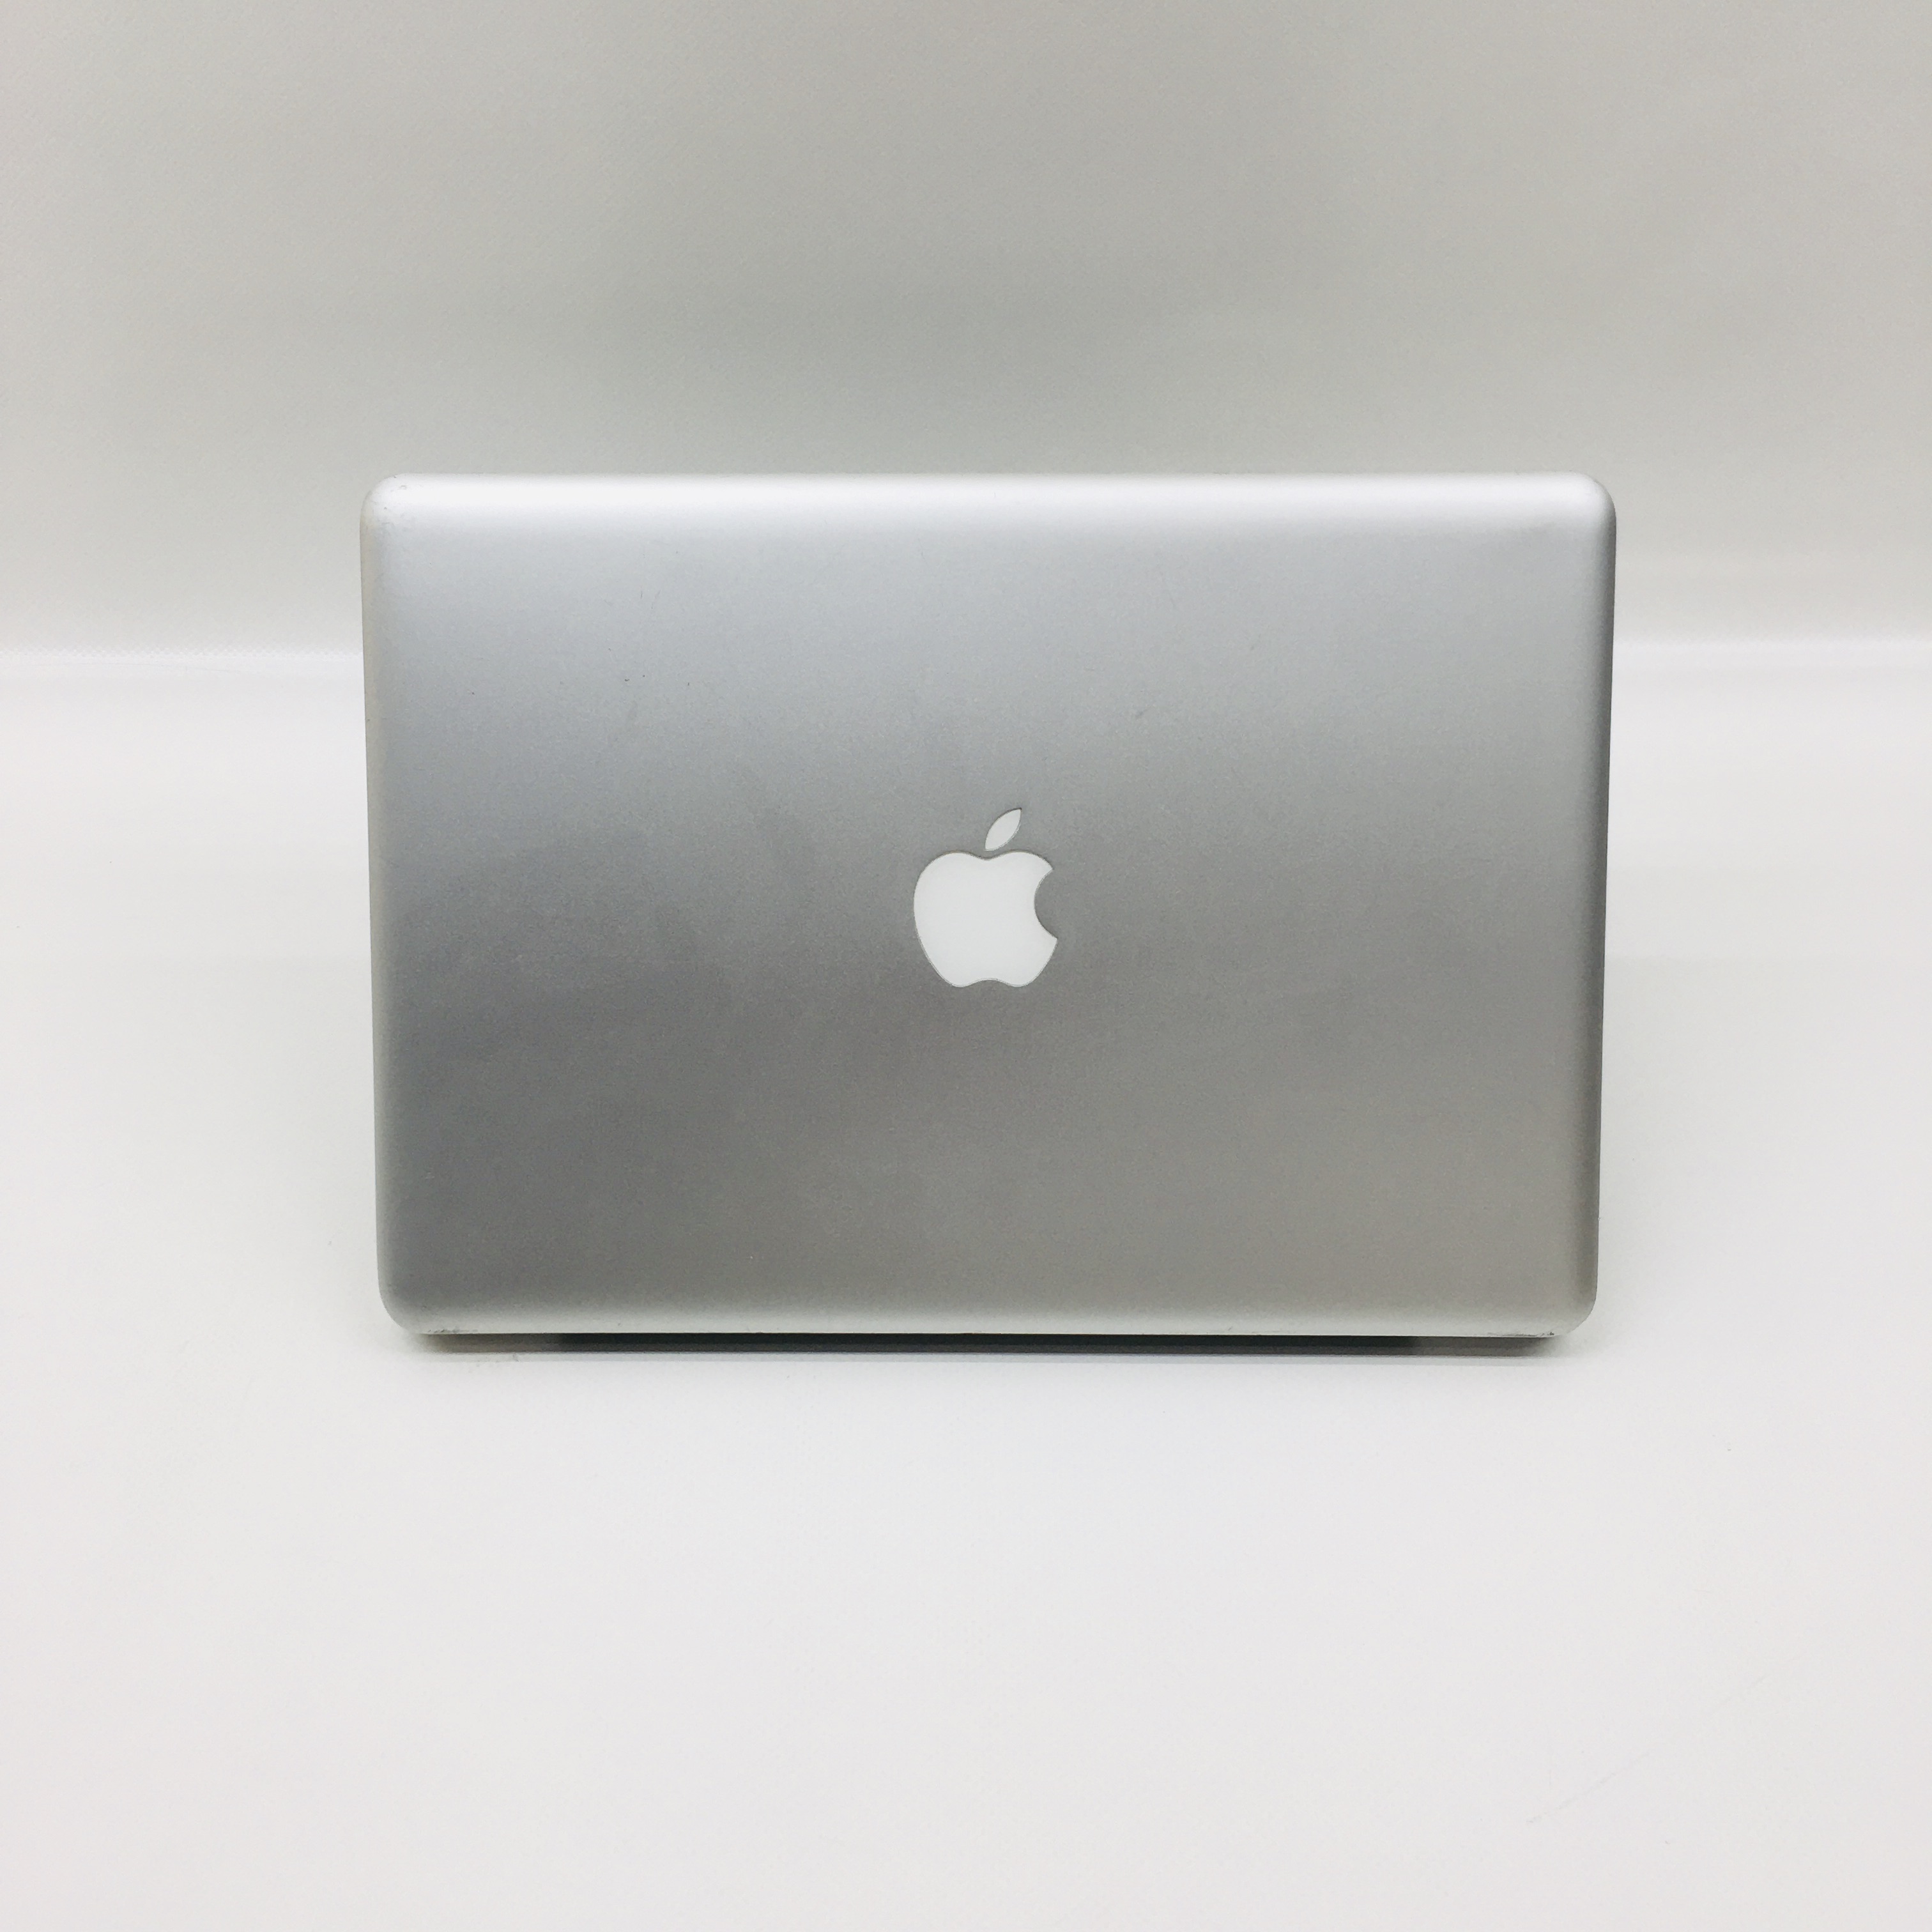 MacBook Pro 13" Mid 2012 (Intel Core i5 2.5 GHz 4 GB RAM 500 GB HDD), Intel Core i5 2.5 GHz, 4 GB RAM, 500 GB HDD, image 5